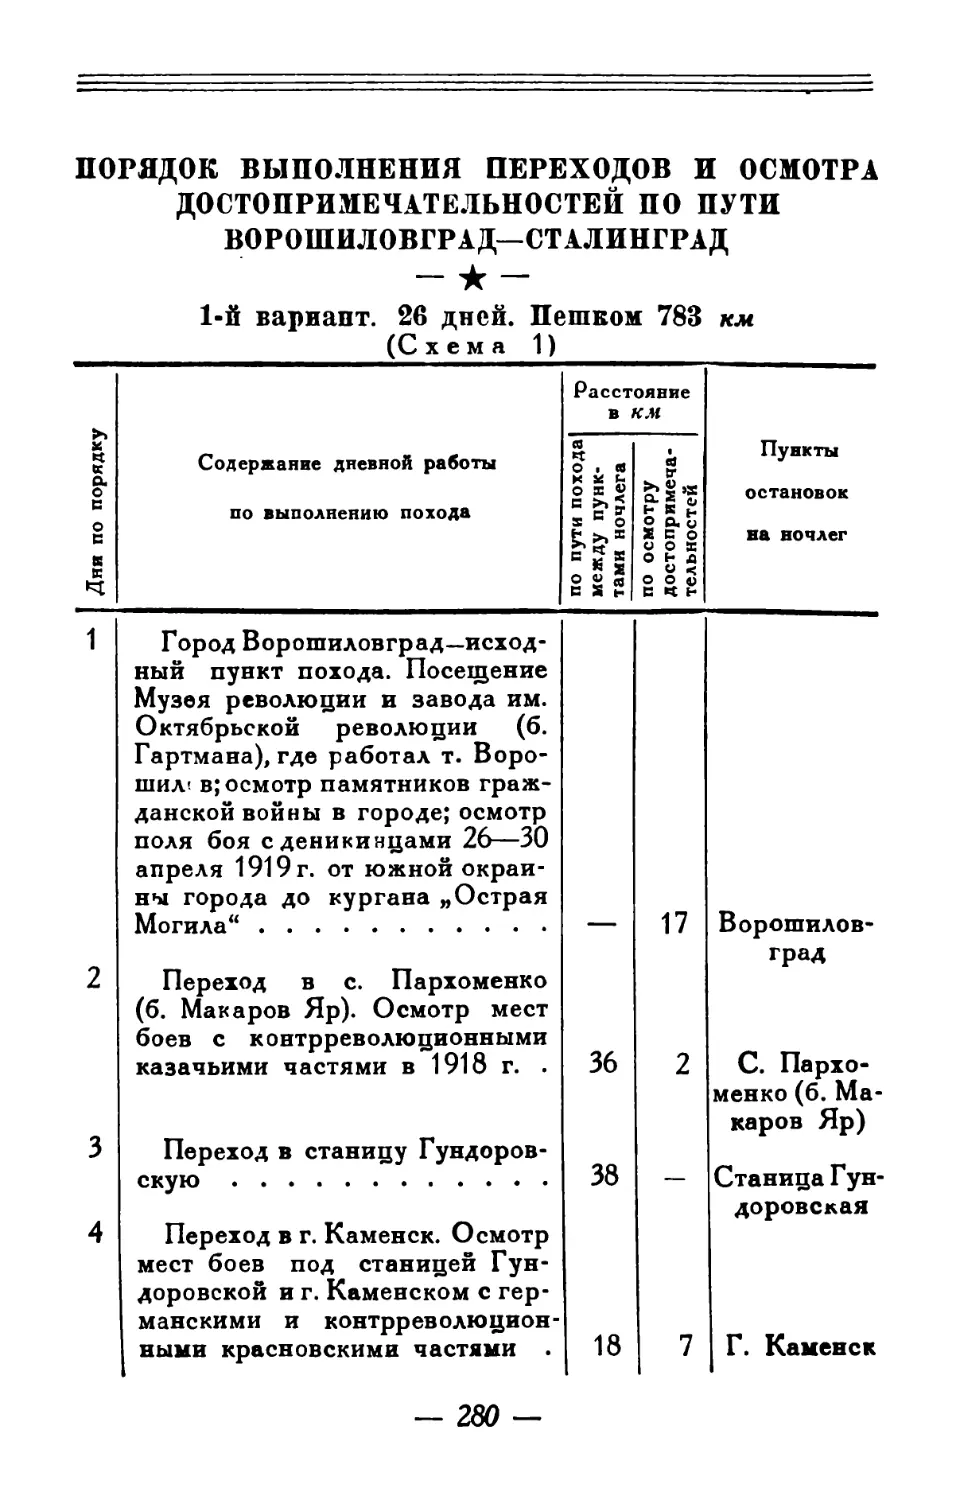 Пять вариантов порядка выполнения перехода от Ворошиловграда до Сталинграда